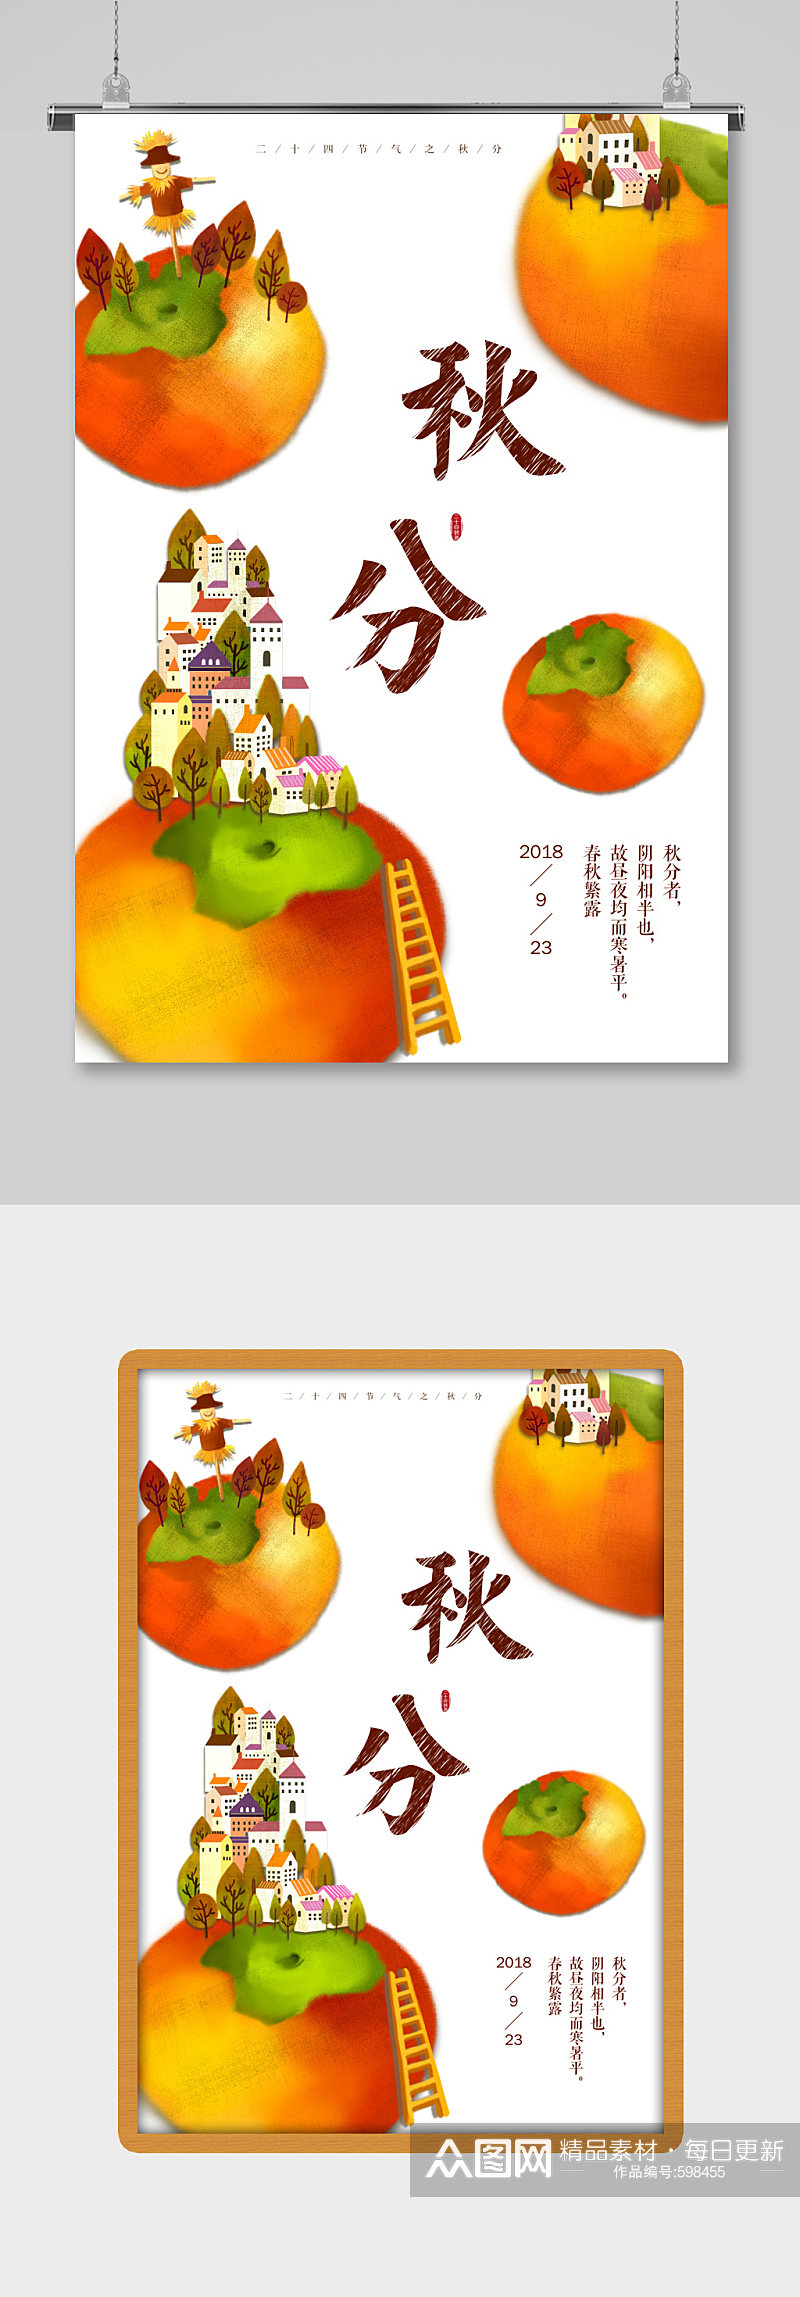 秋天新鲜柿子上秋天新鲜柿子上市海报展板素材